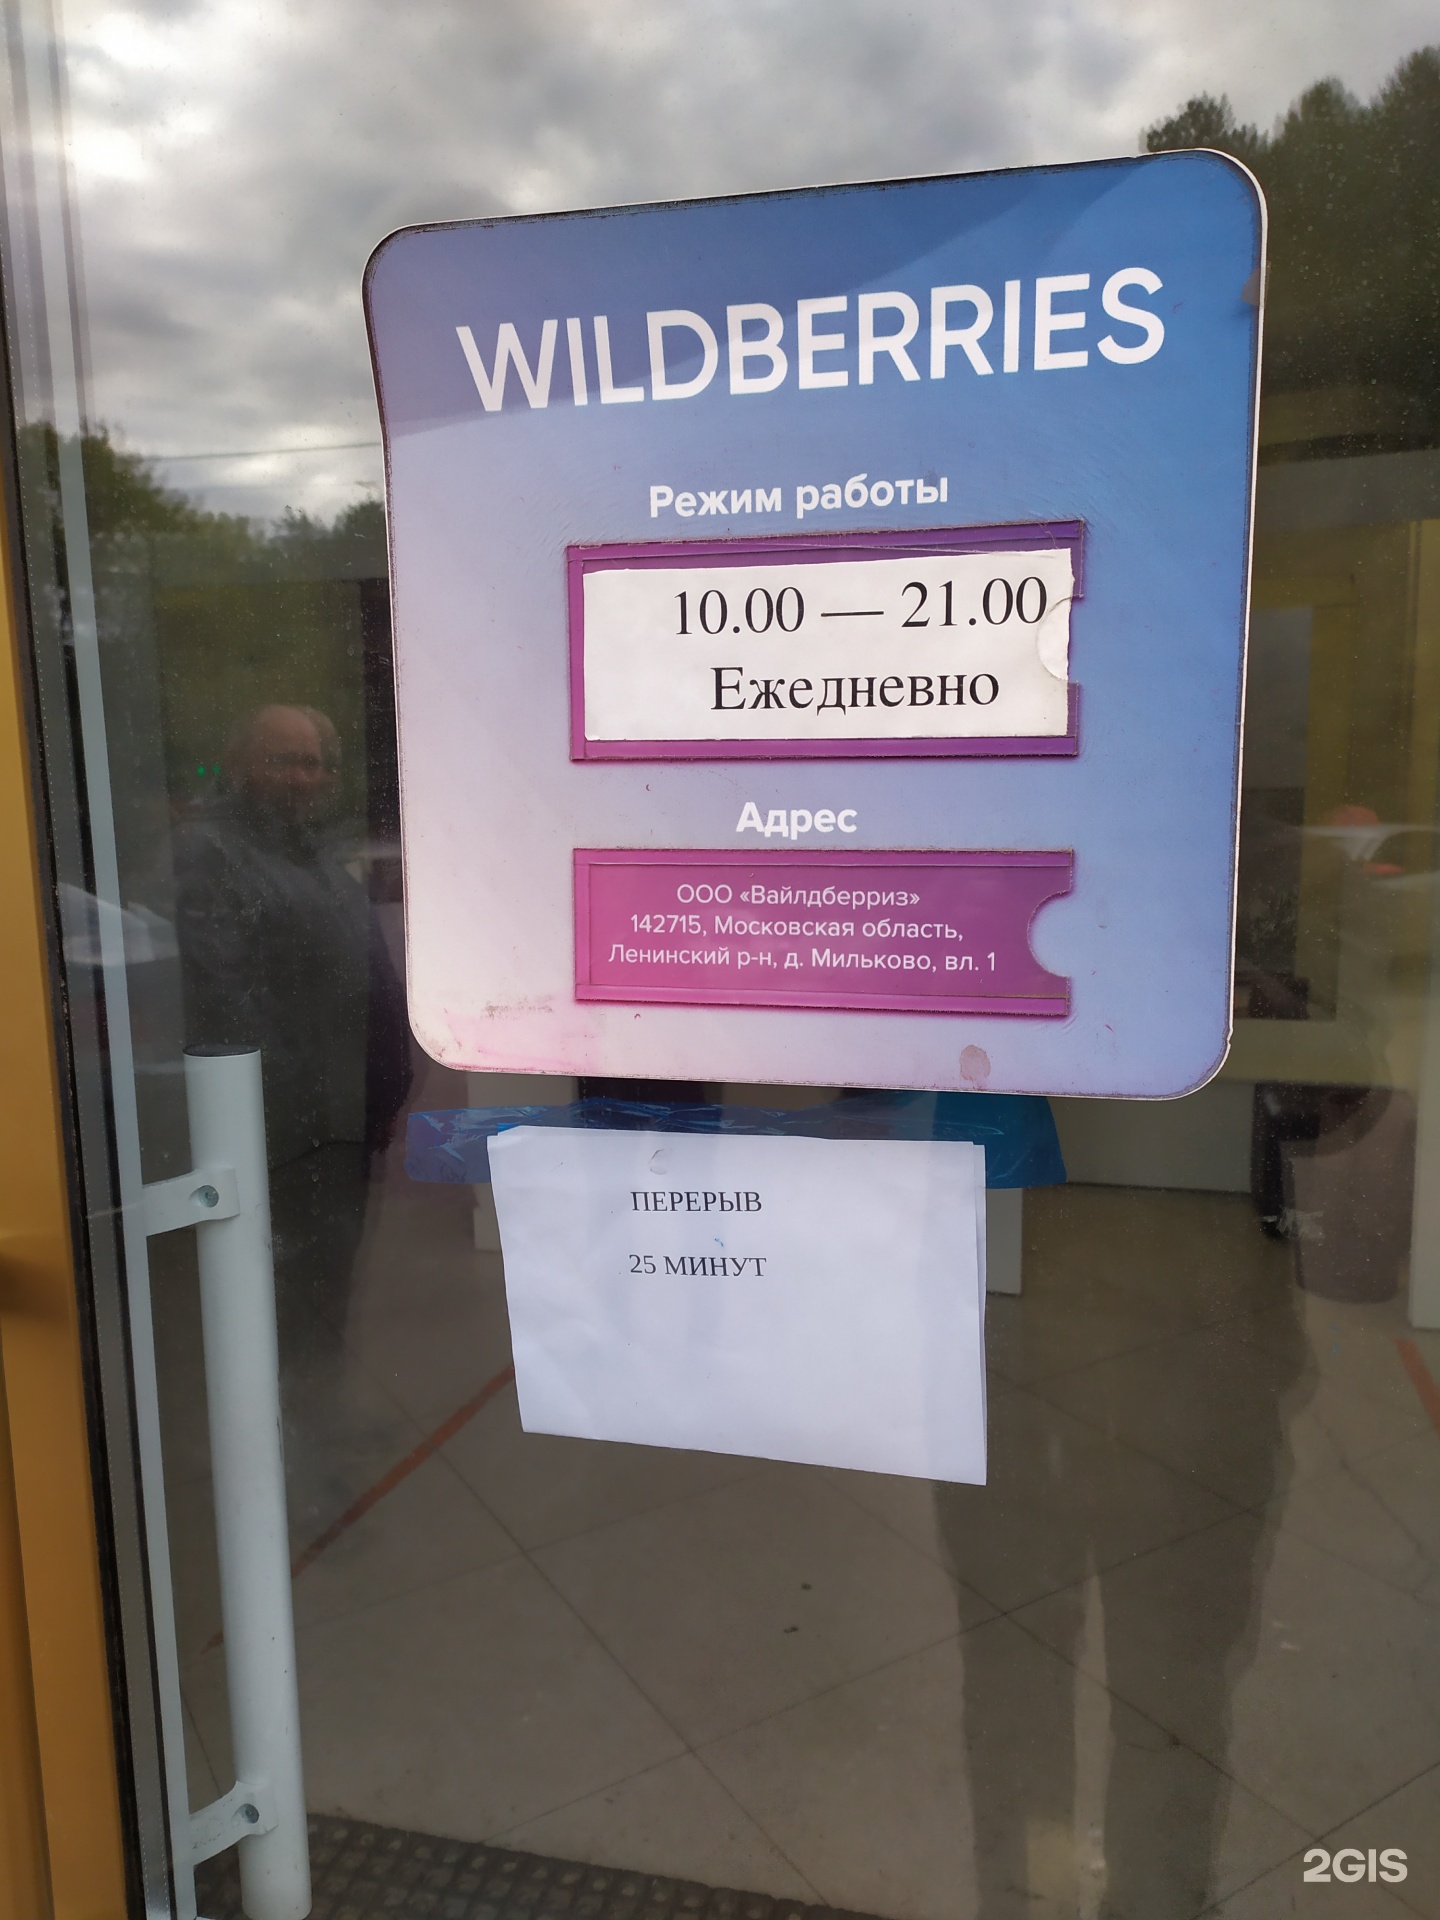 Wildberries Адреса Магазинов